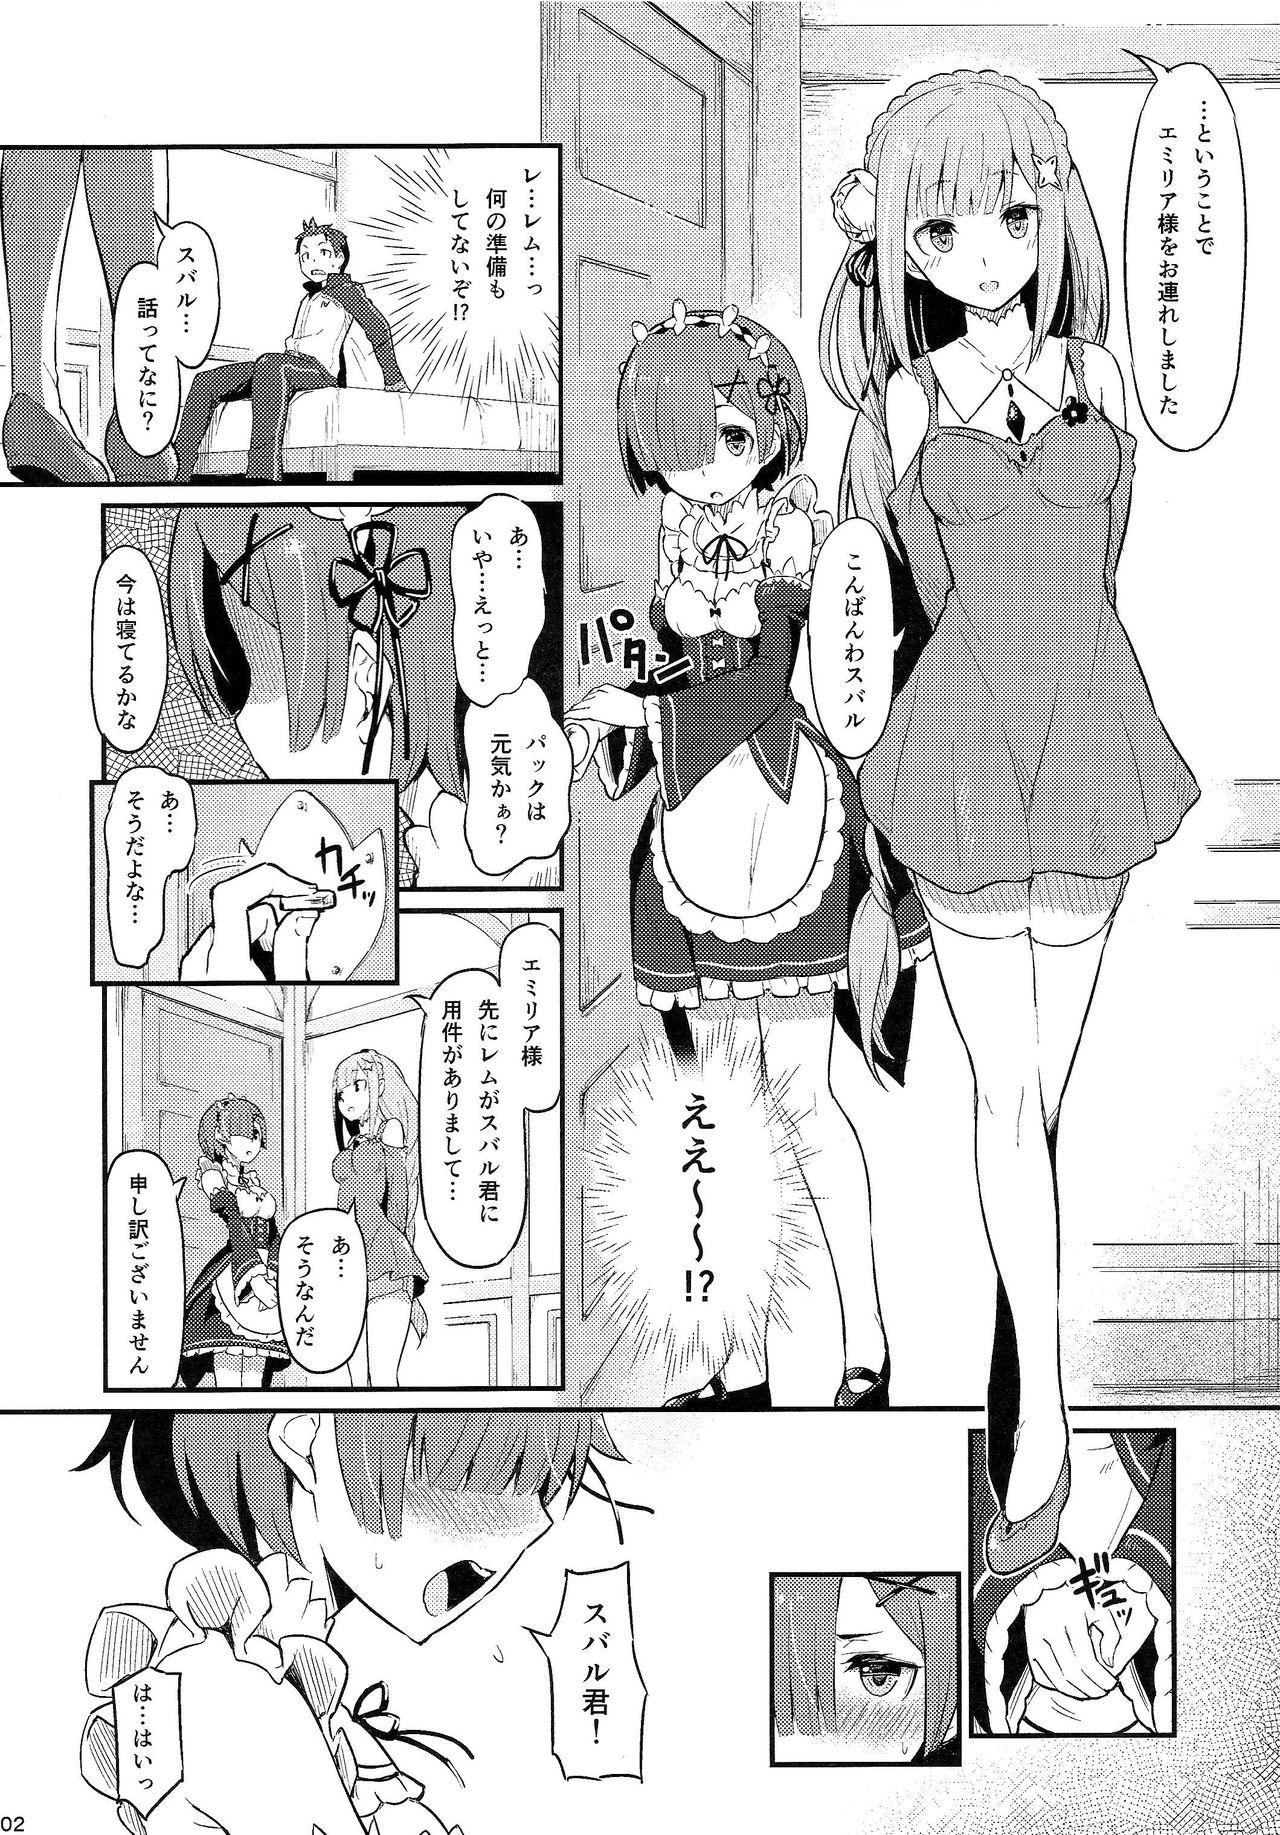 Nice Ass Rem no Emilia Kuttsuke Daisakusen - Re zero kara hajimeru isekai seikatsu Gostosas - Page 3